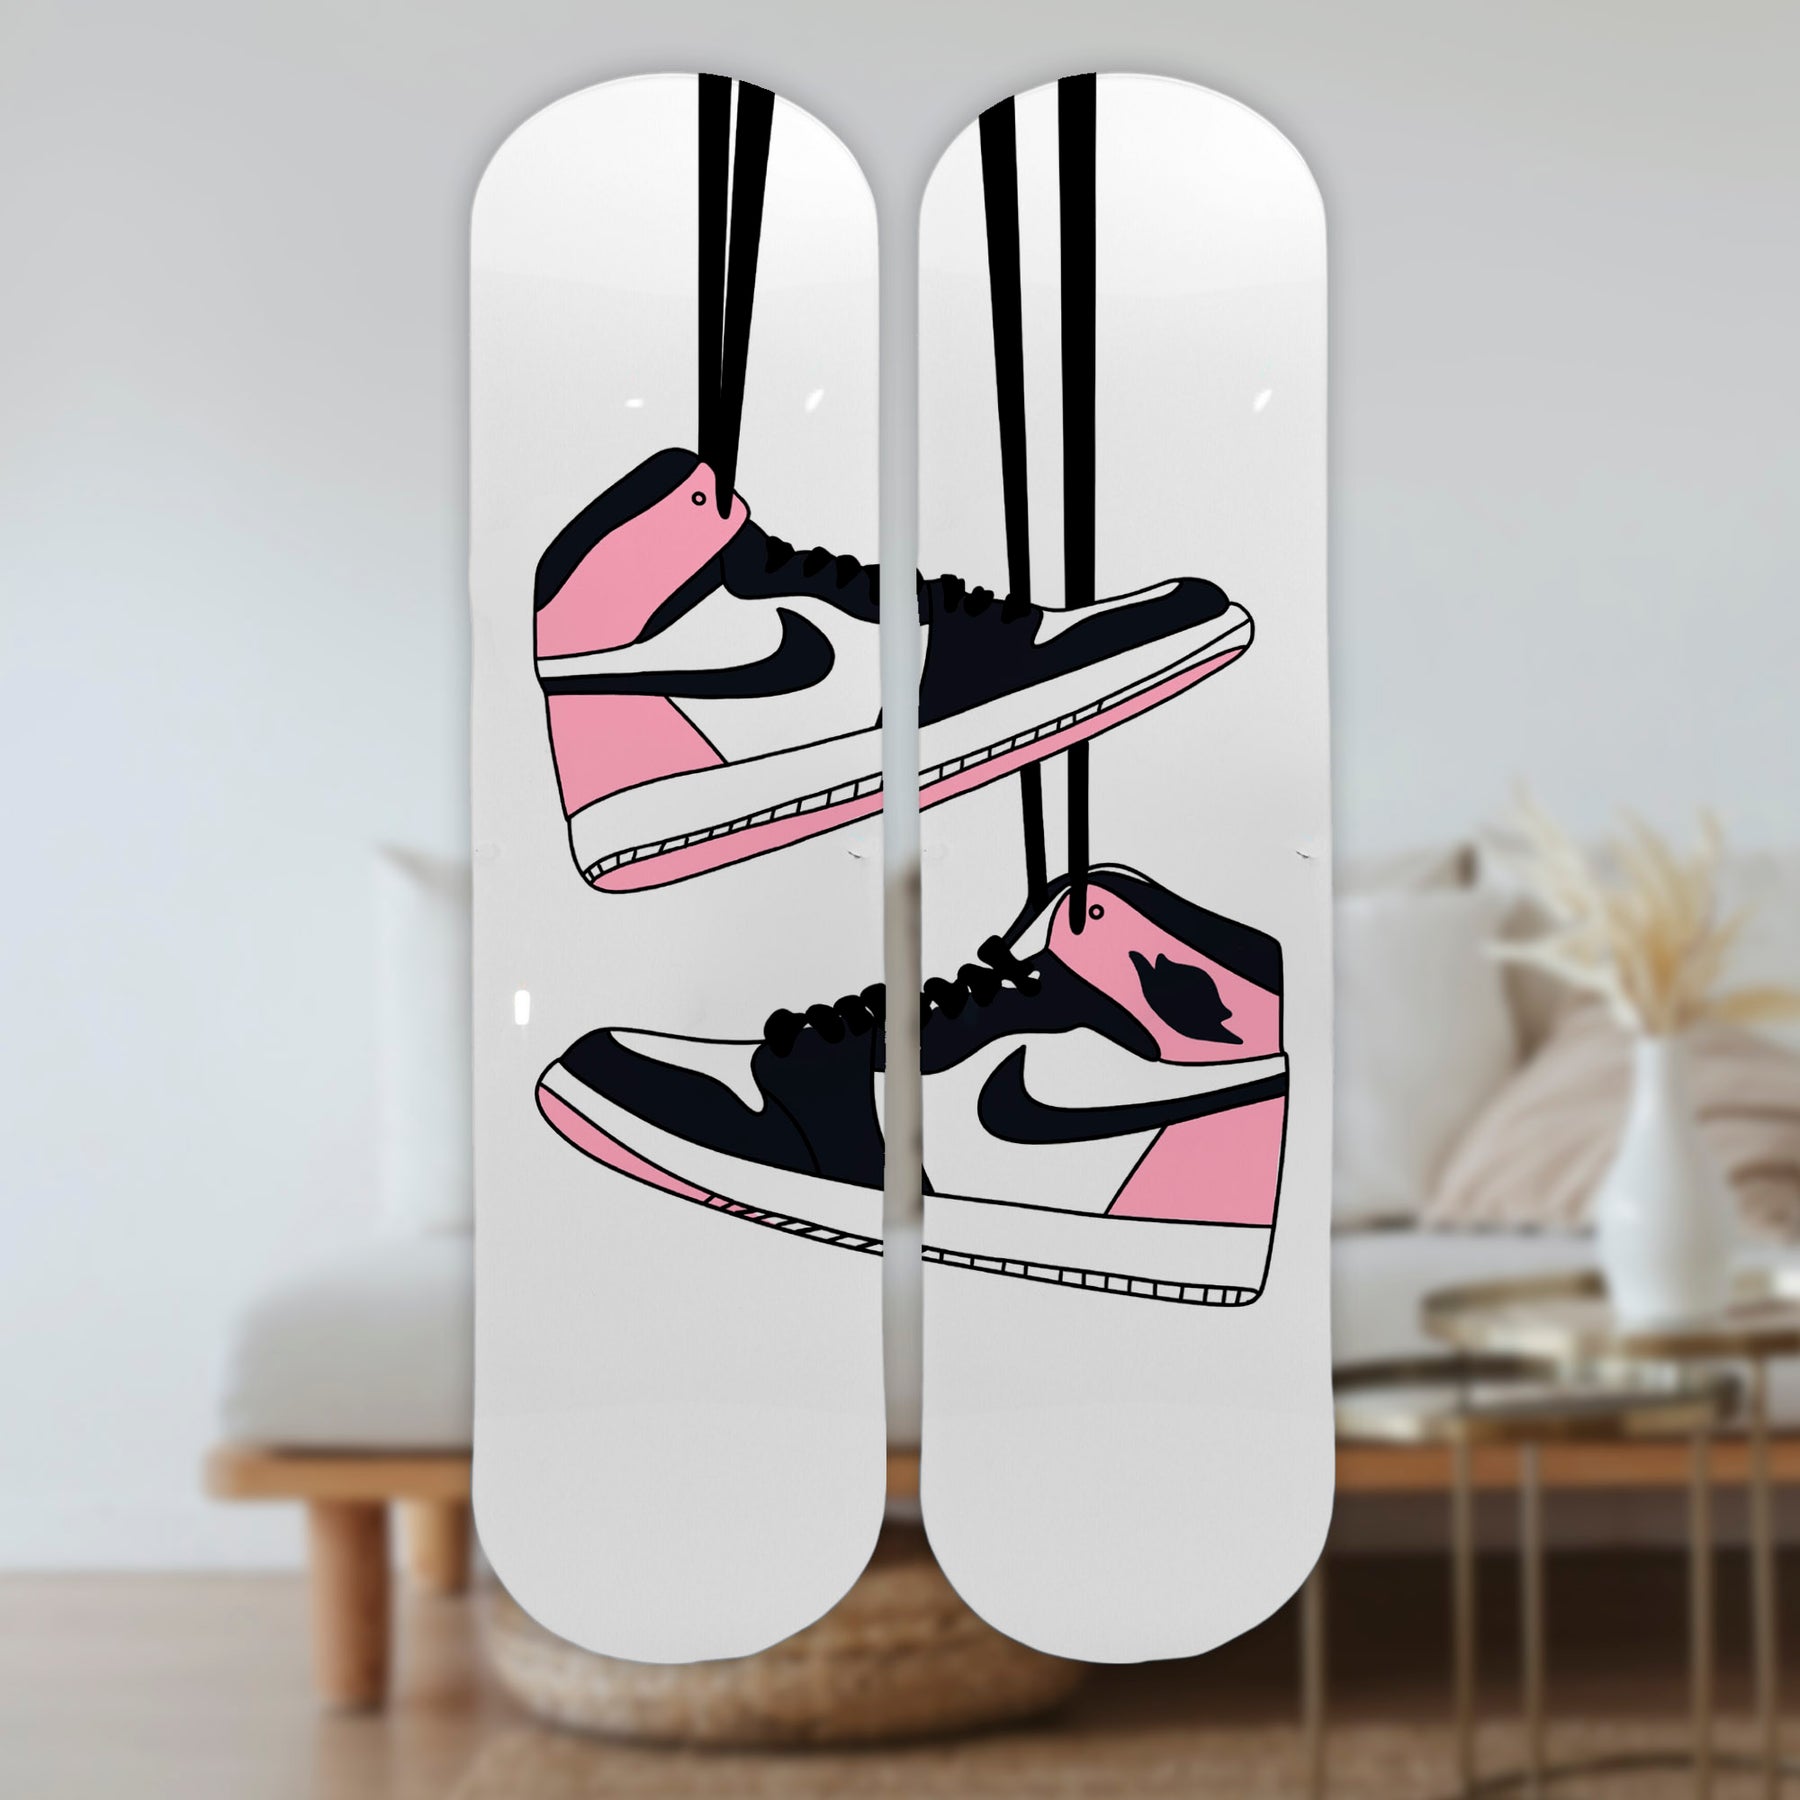 Wall Art of Nike Skateboard Design in Acrylic Glass - Pop Art